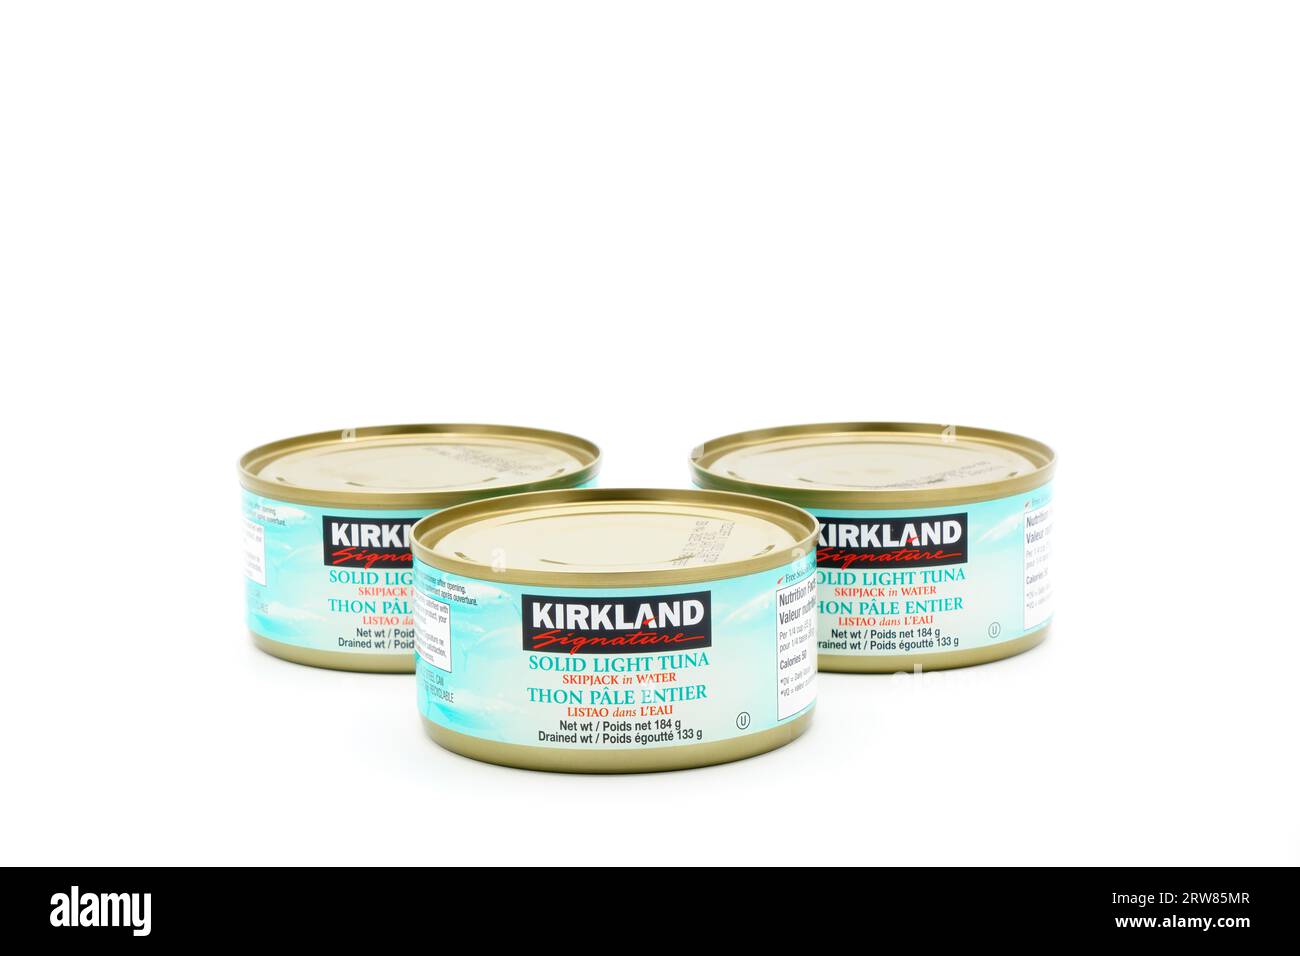 Boîtes de thon clair solide de la marque Kirckland. Kirkland Brand est une marque privée vendue exclusivement dans les magasins de gros Costco. Banque D'Images